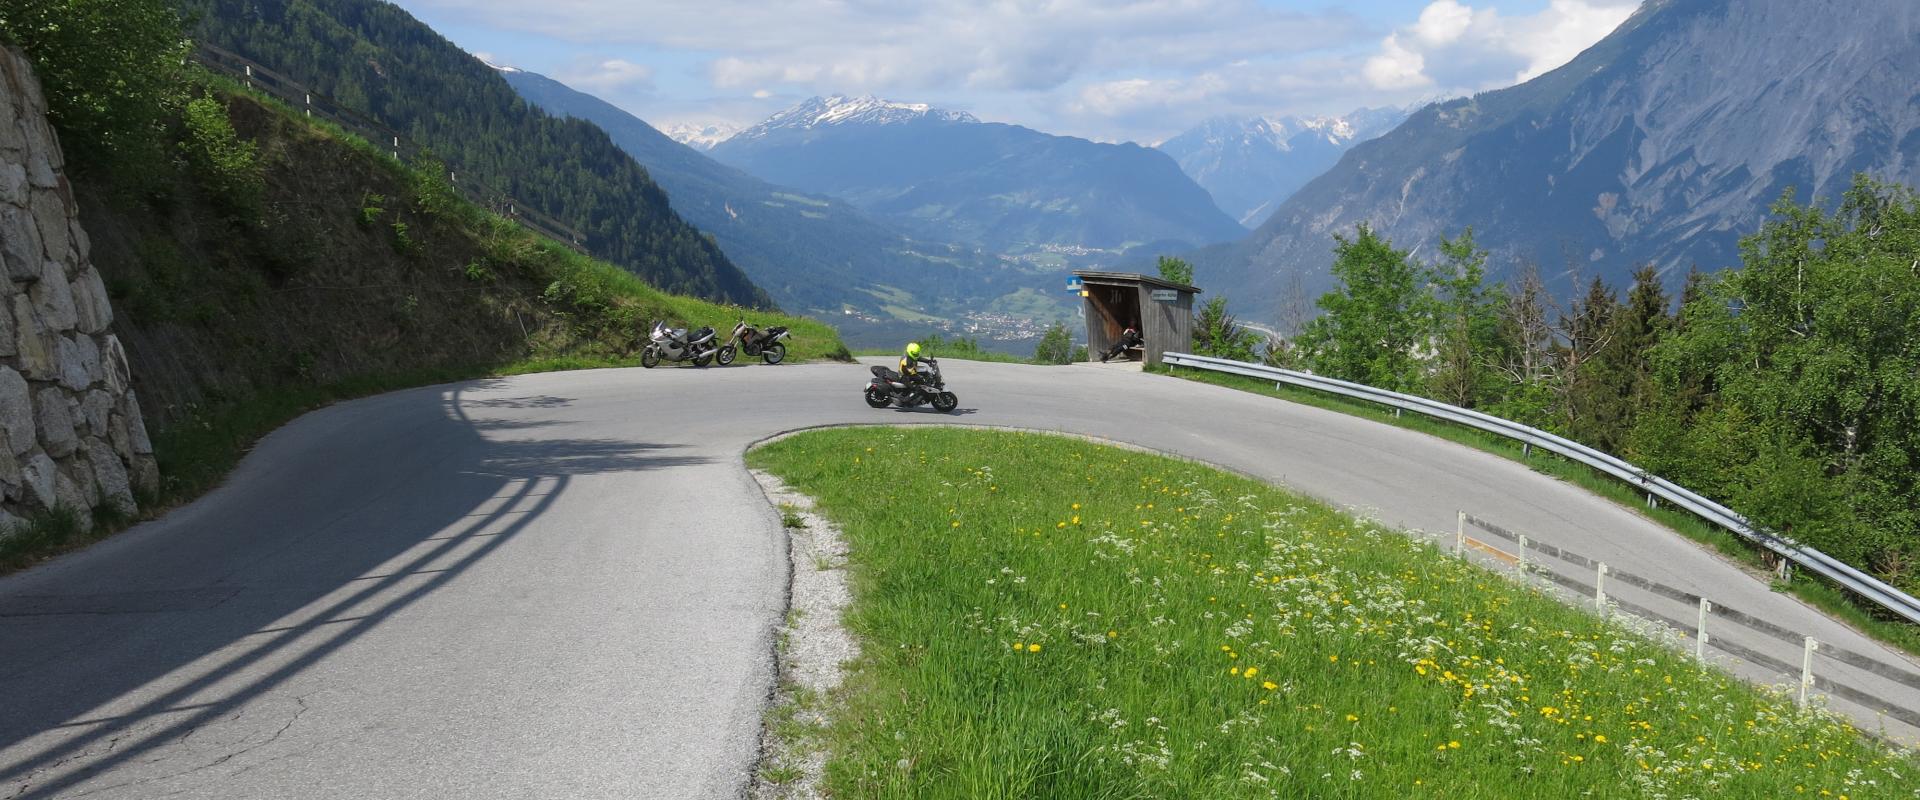 Motorradtour Tirol.JPG